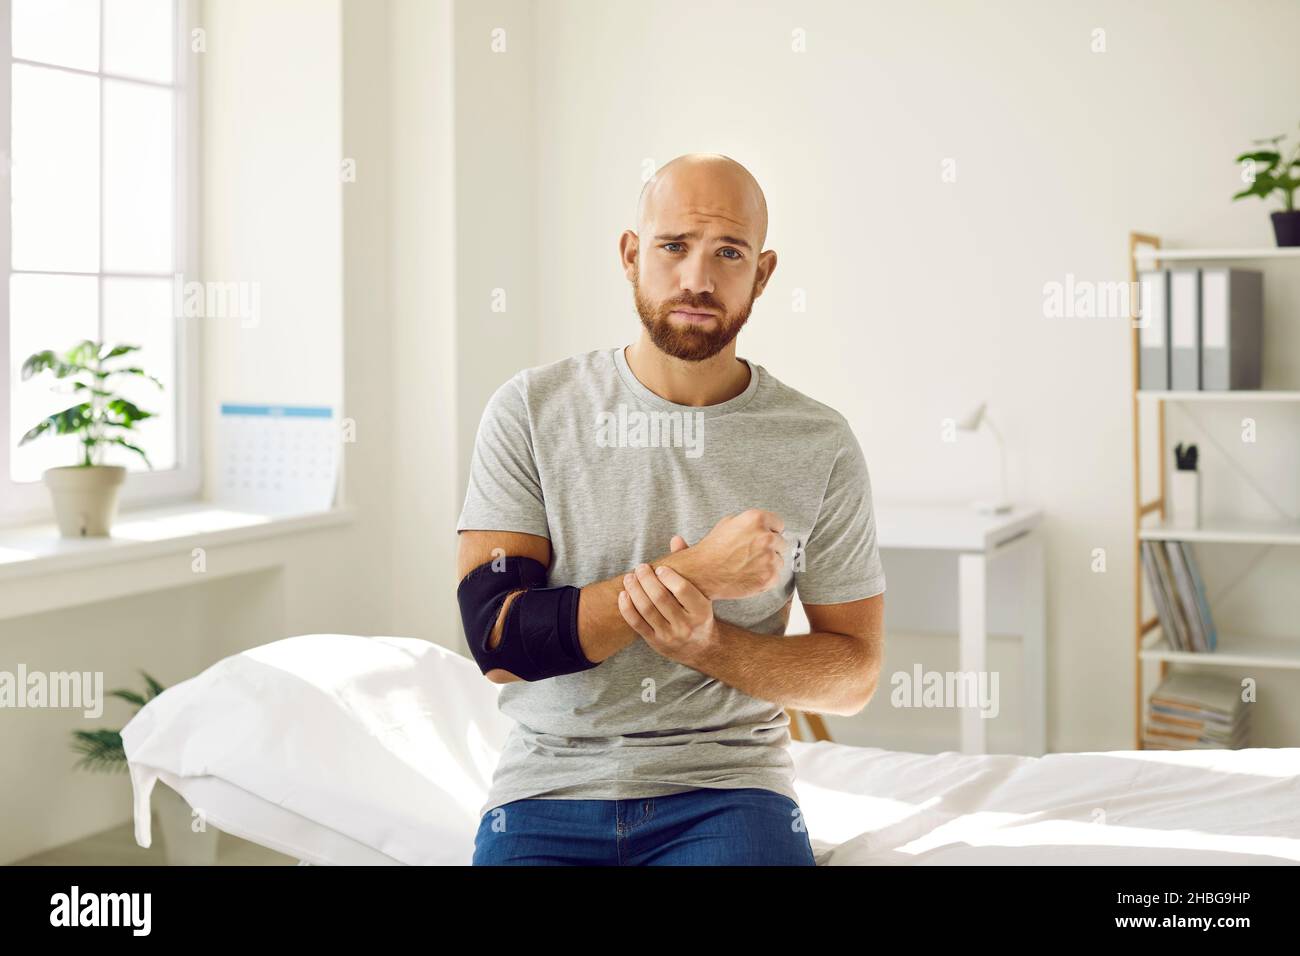 Porträt eines traurigen Mannes, der nach einem Knochenbruch einen Verband am Arm tragen muss. Stockfoto